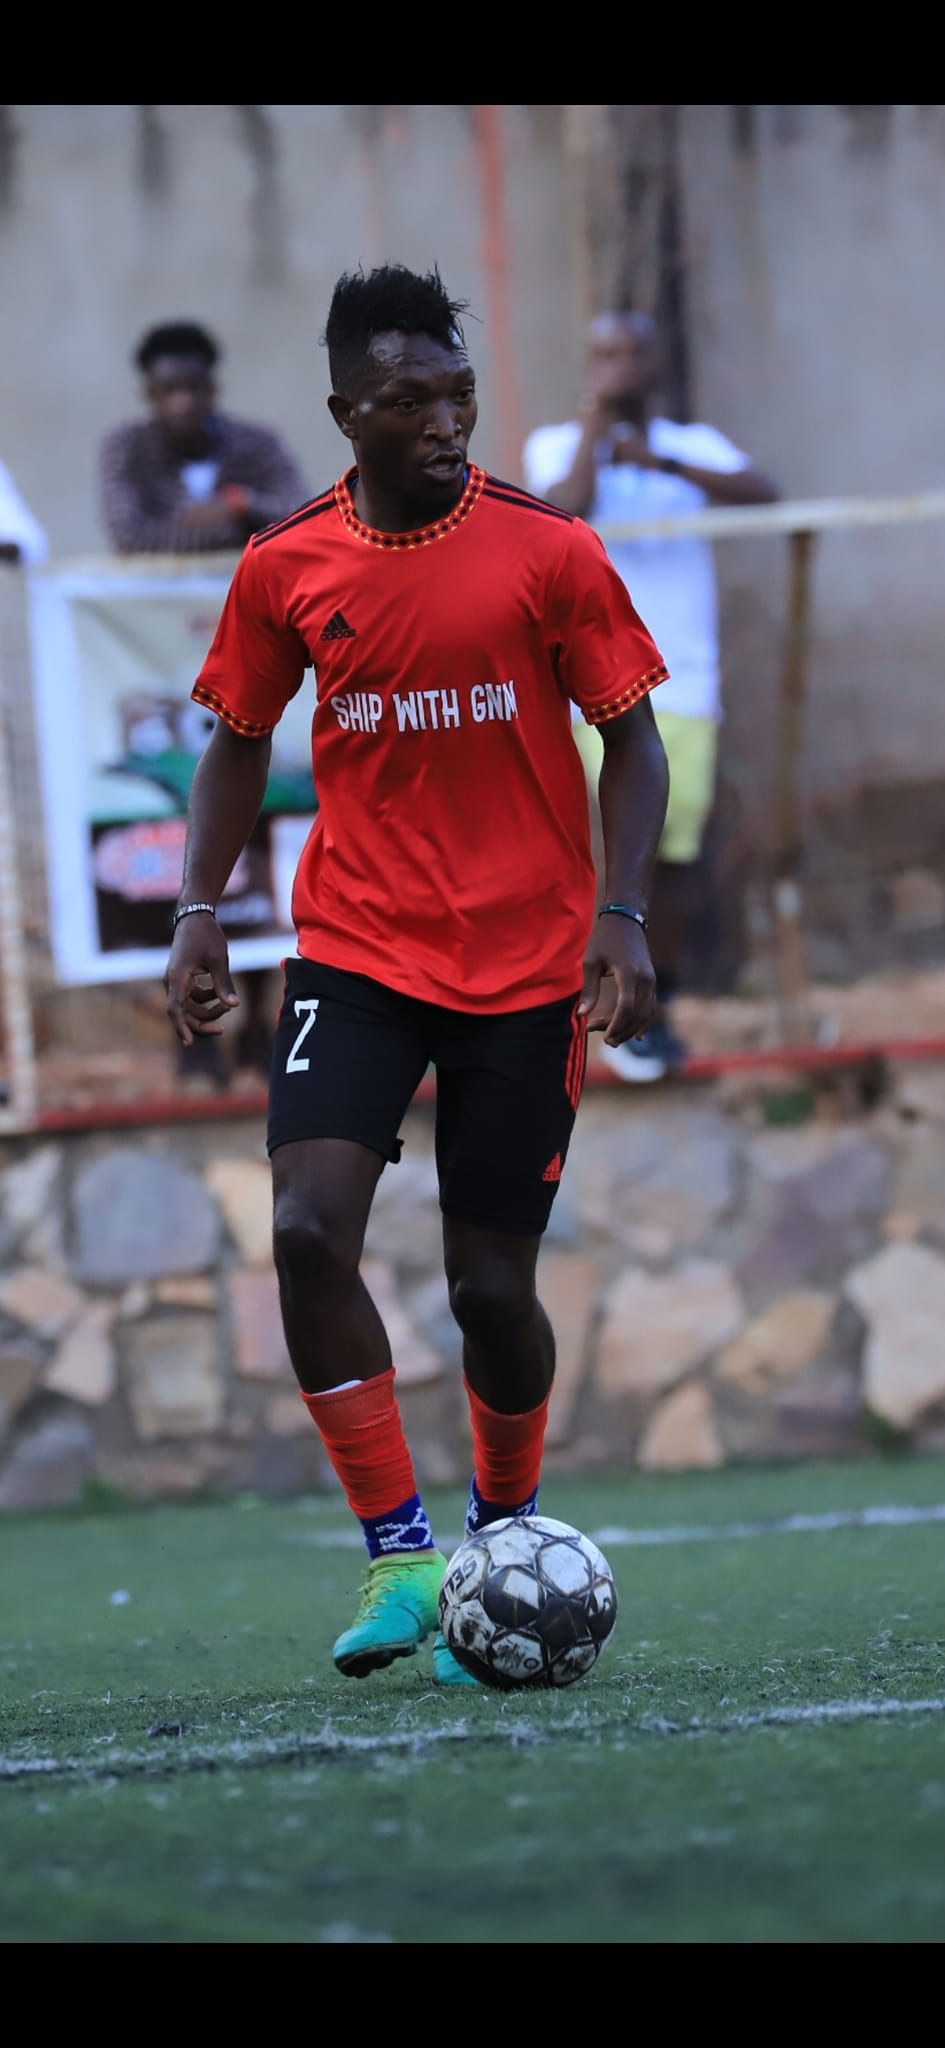 Echipa din Liga 3 care a adus din Botswana un jucător din naționala Ugandei: ”Primele transferuri internaționale din istoria fotbalului hațegan”!_3